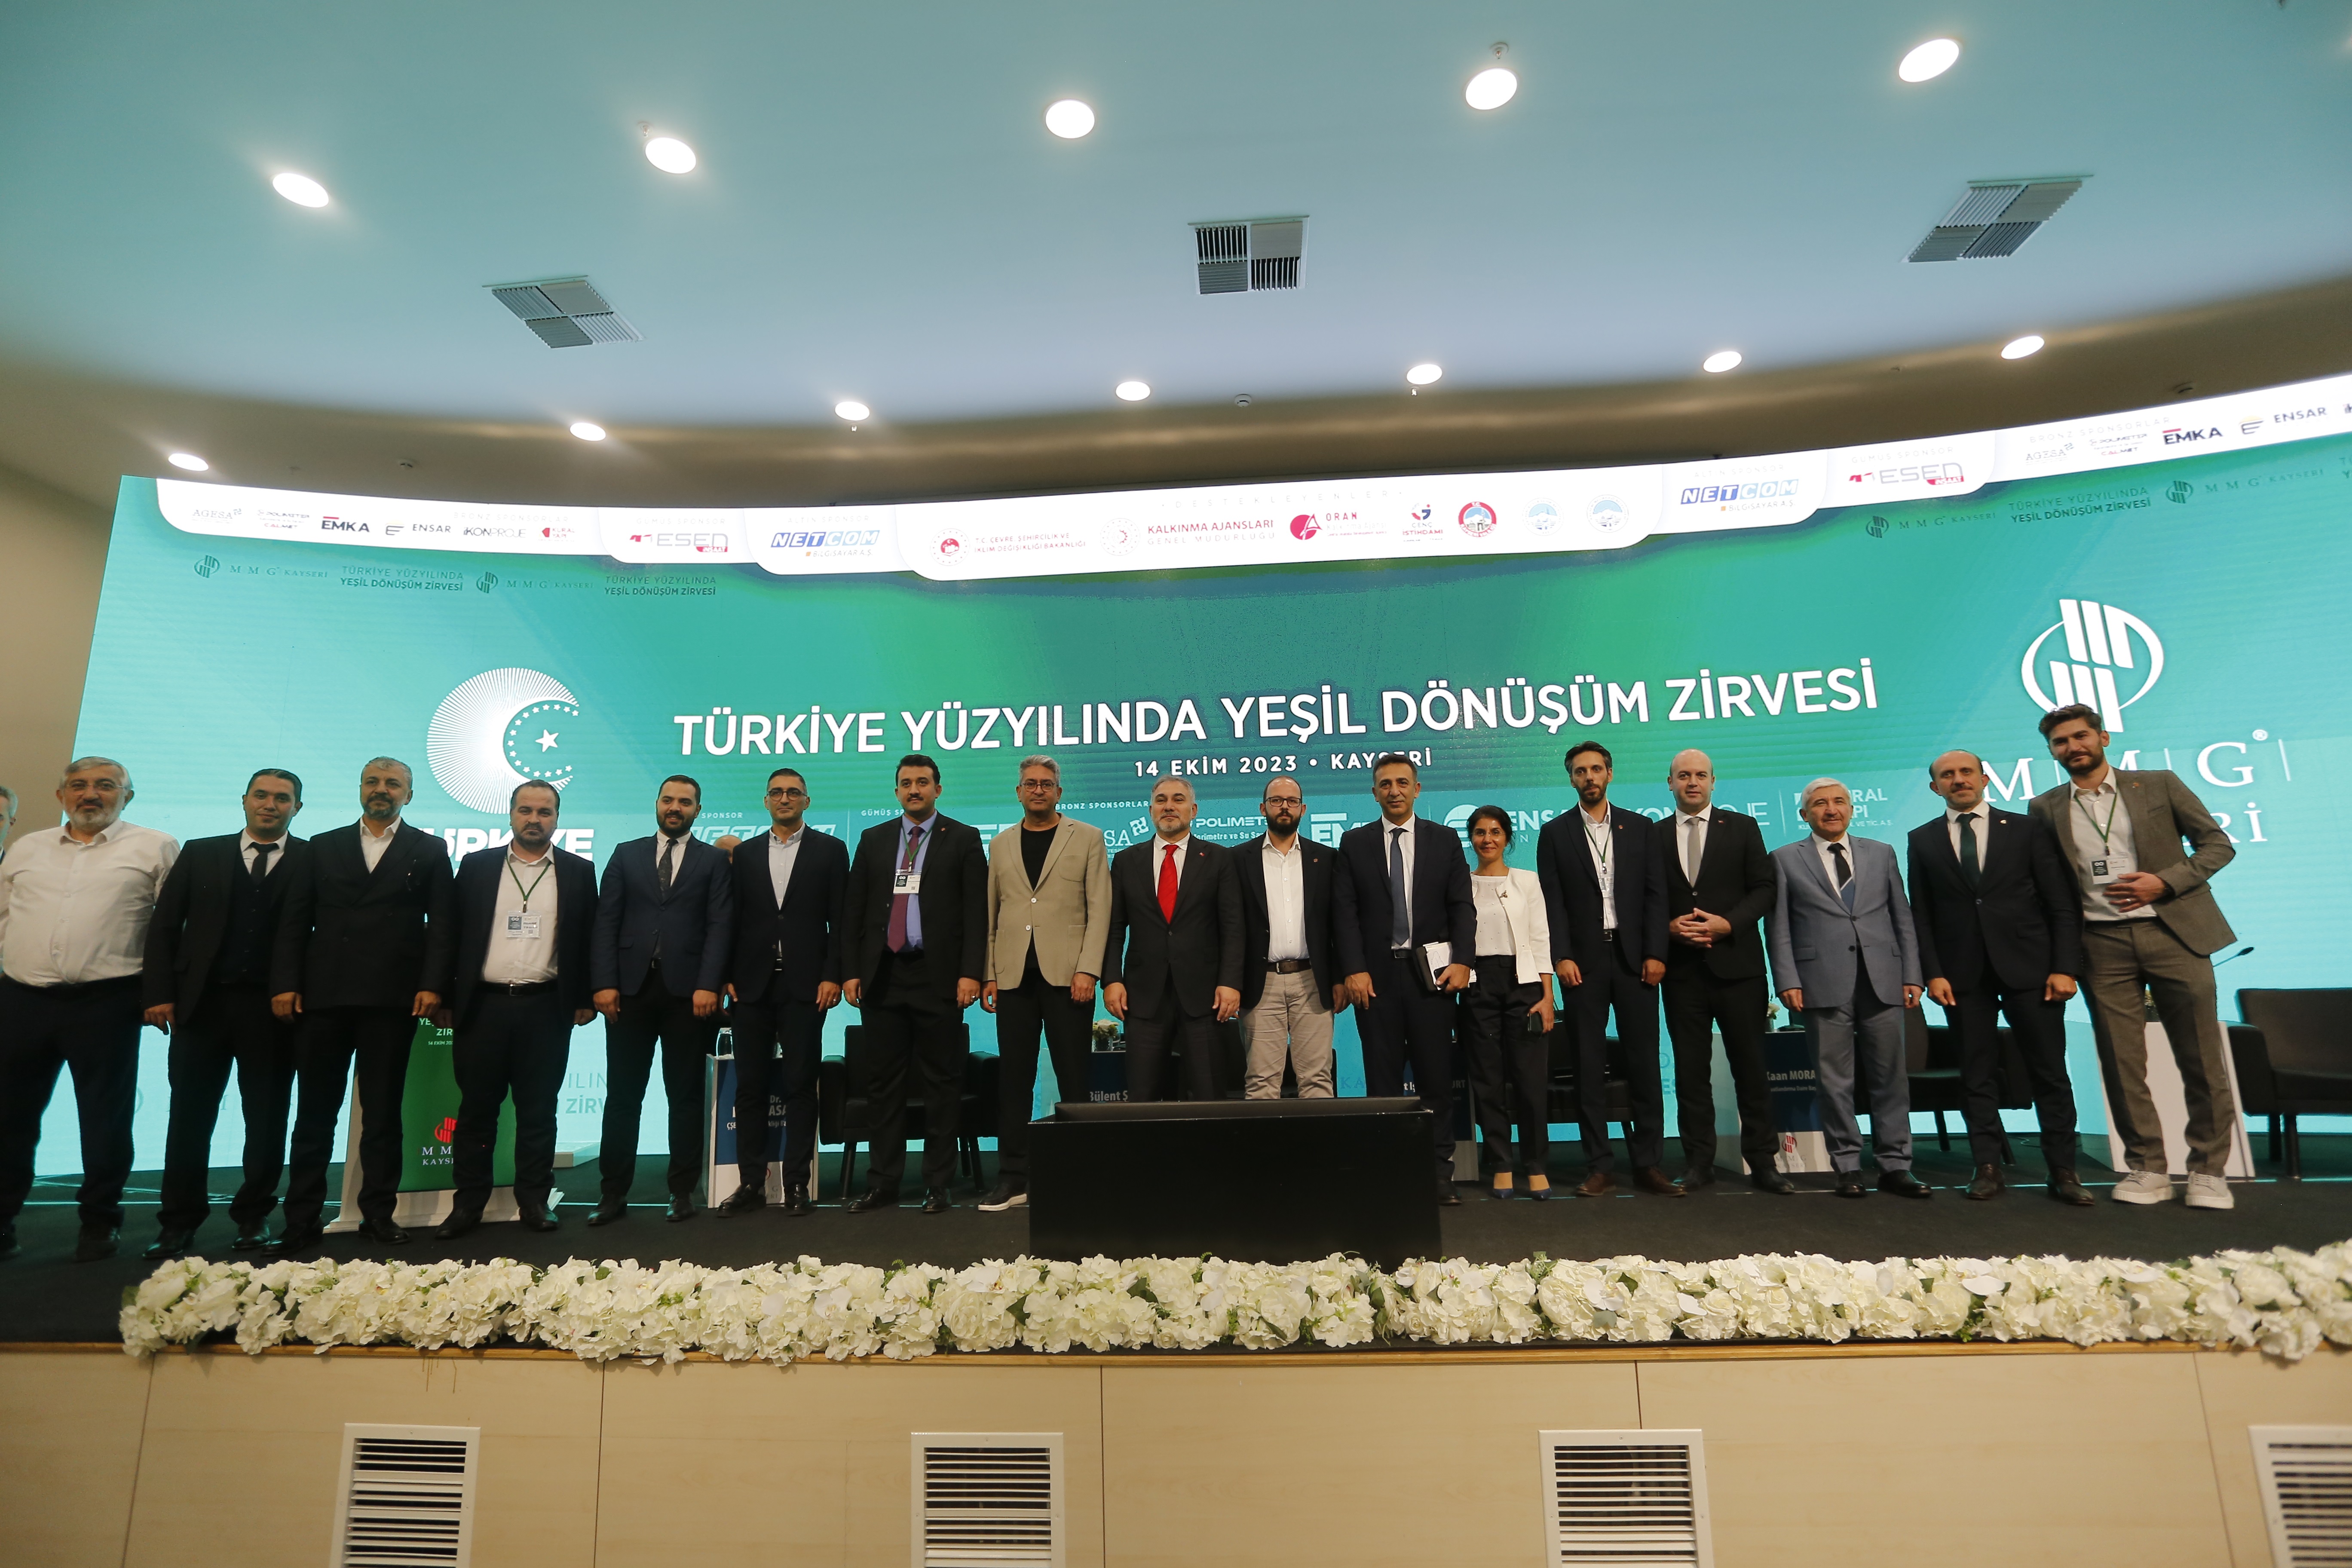 Türkiye Yüzyılında Yeşil Dönüşüm Zirvesi gerçekleştirildi